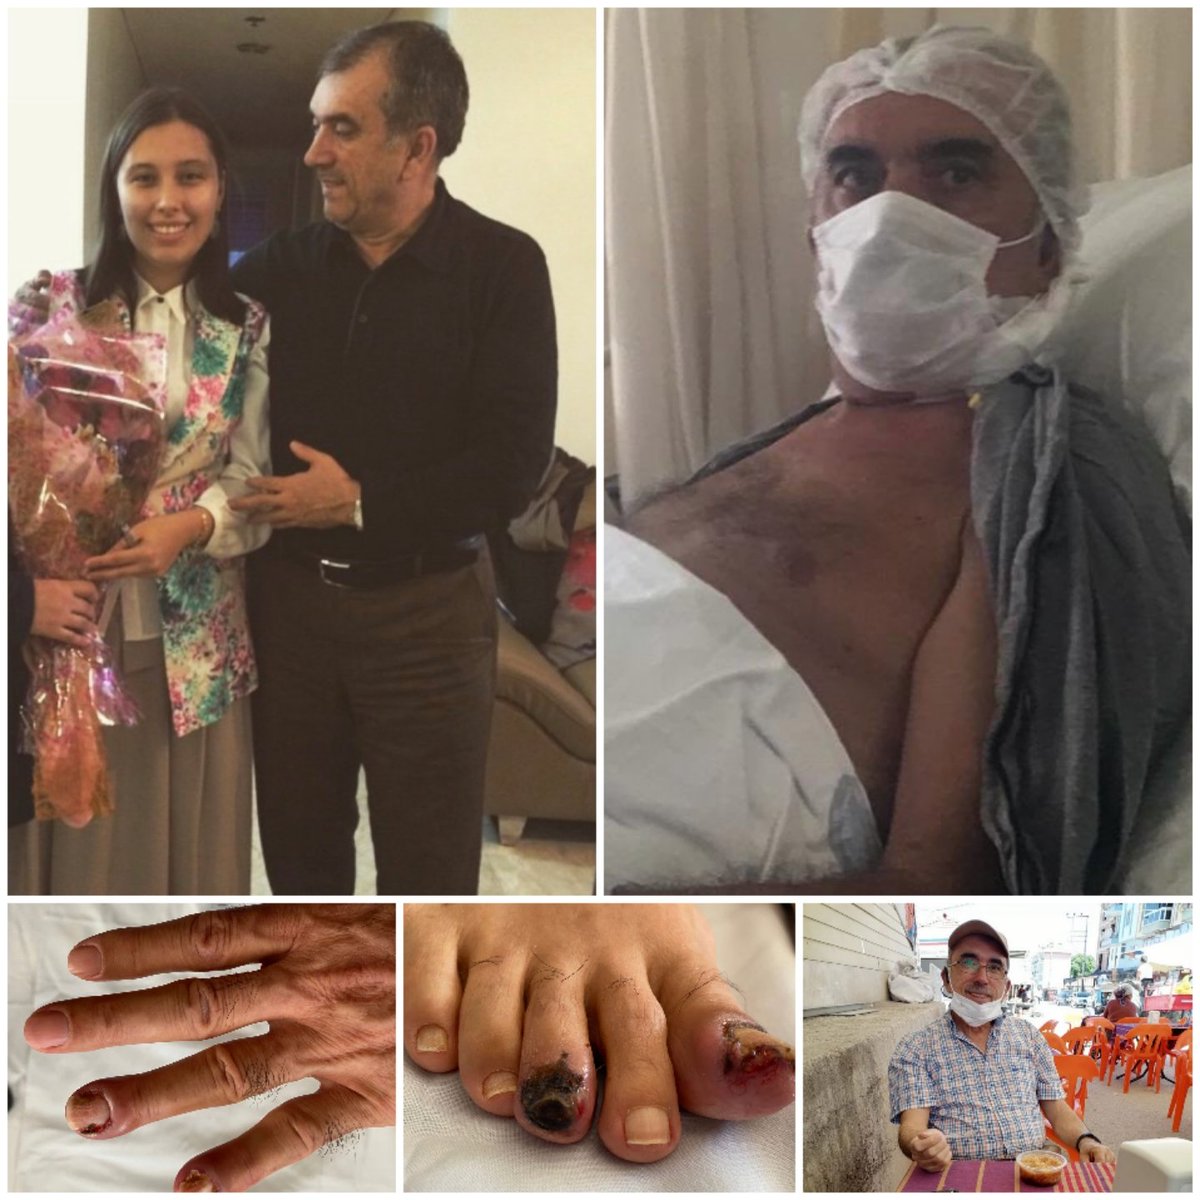 Doktorların 1 yıl ömür biçtiği Ahmet Zeki Özkan'ın kızı: 'Babam 4. evre kanser hastası, akıllı hap vücuduna artık fayda vermiyor. 1 ay'ı geçti yeni tedaviye başlanmadı. Babam için endişeliyim. Kanser hastalarının her dakikası kıymetliyken babamın dakikaları gidiyor.' #Perşembe